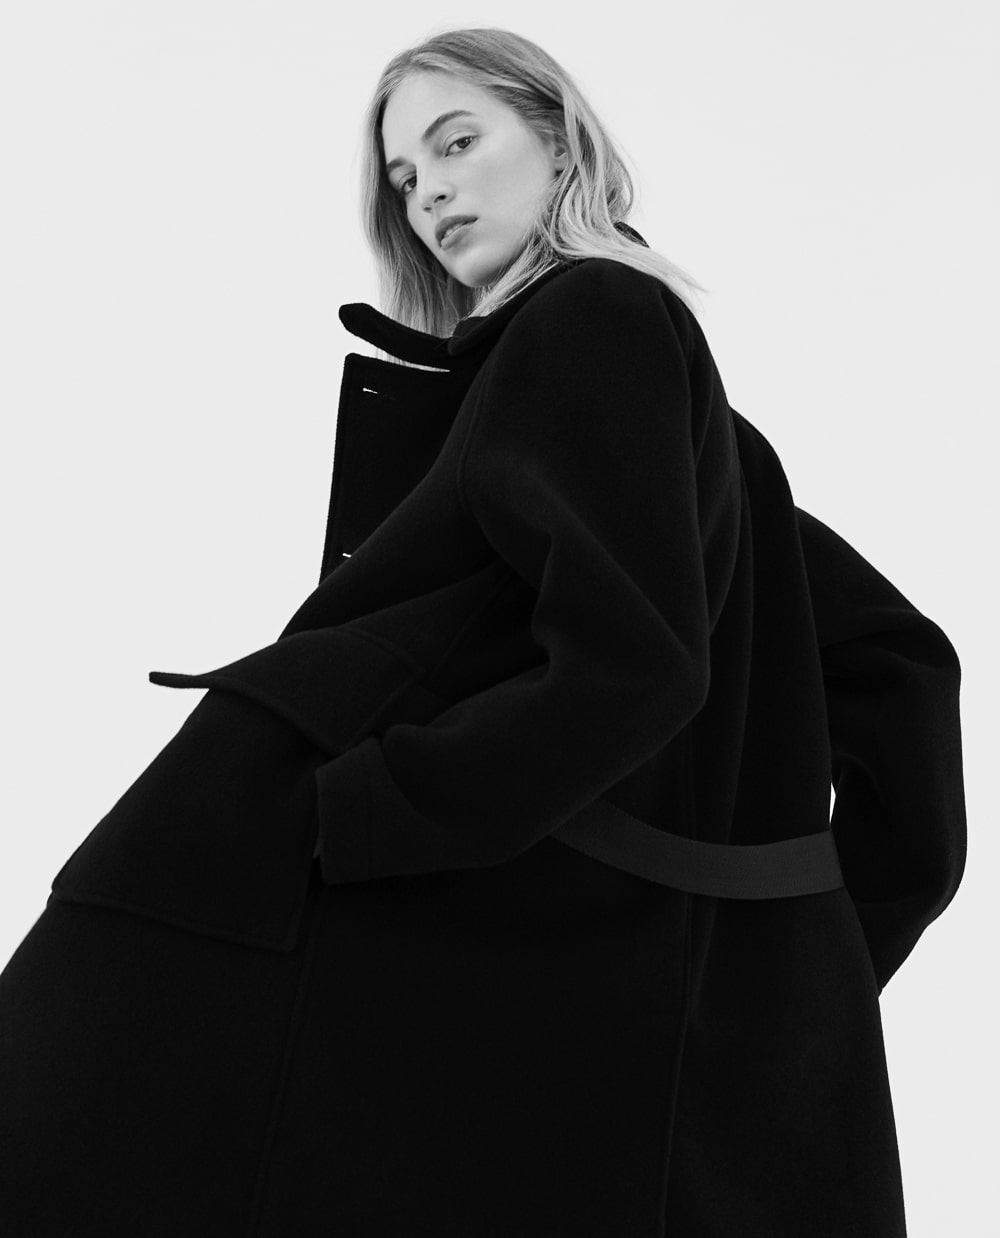 Agata Pospieszynska Captures Vanessa Axente For Harper's Bazaar Spain ...